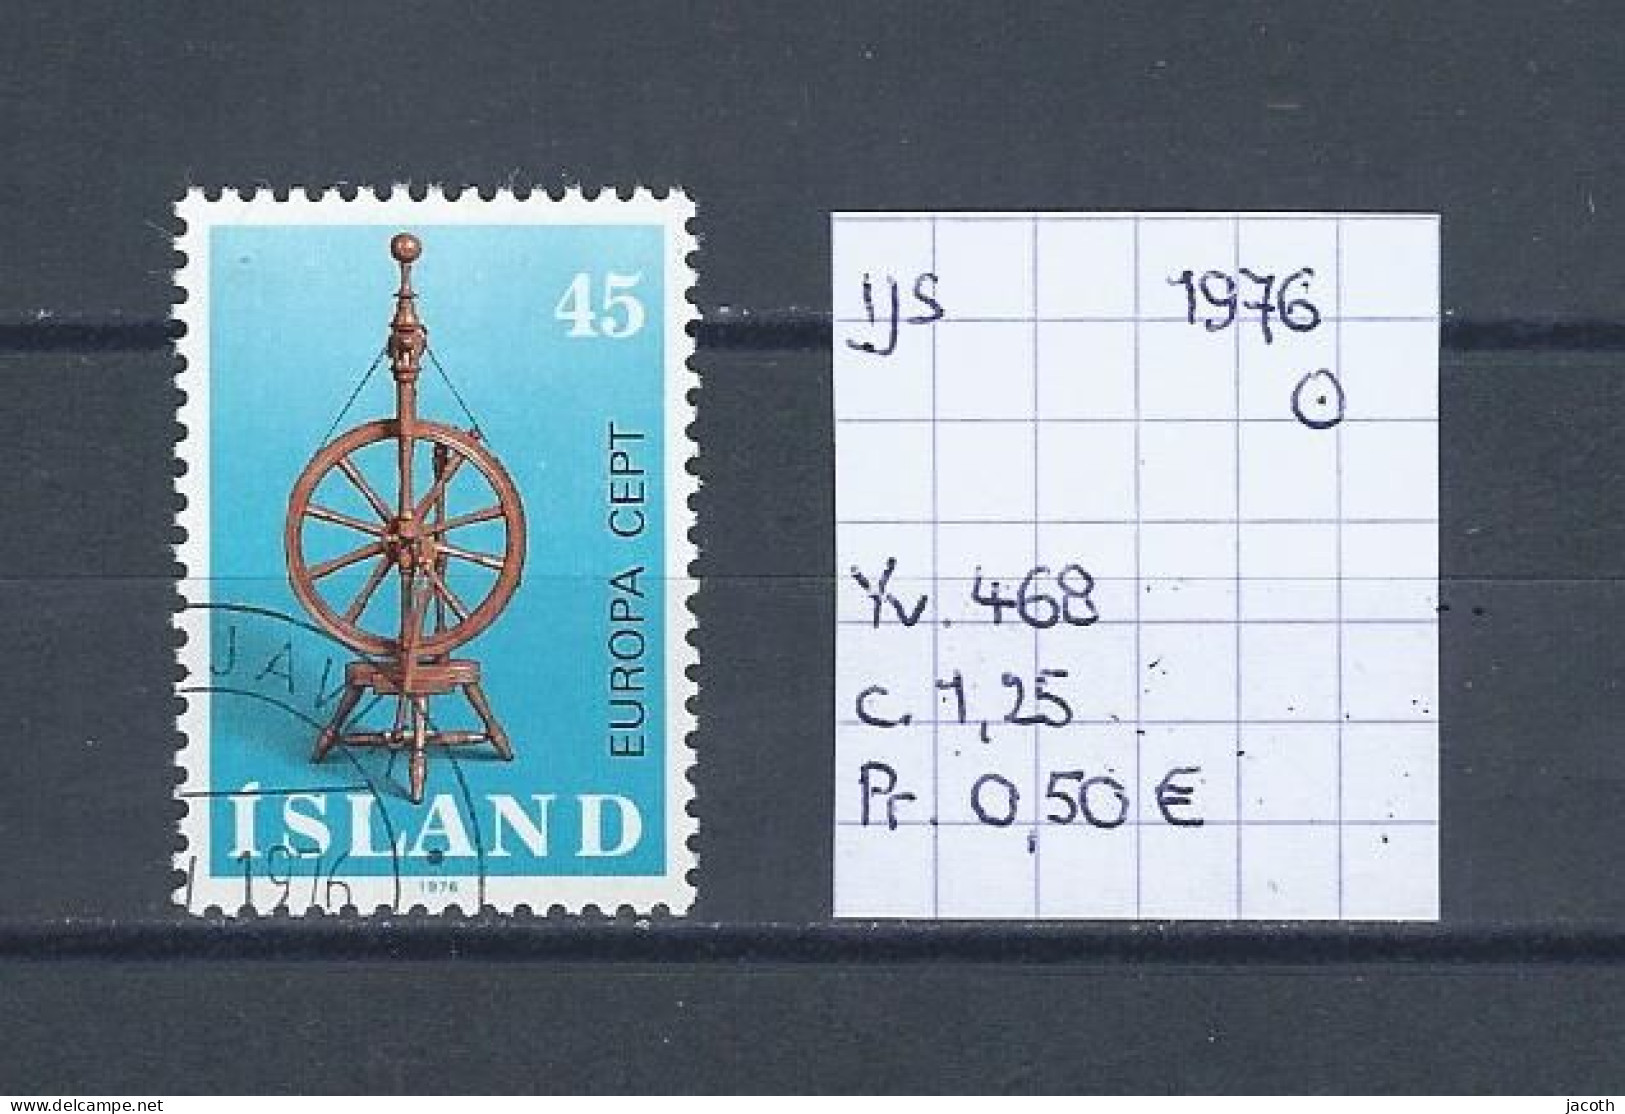 (TJ) IJsland 1976 - YT 468 (gest./obl./used) - Used Stamps